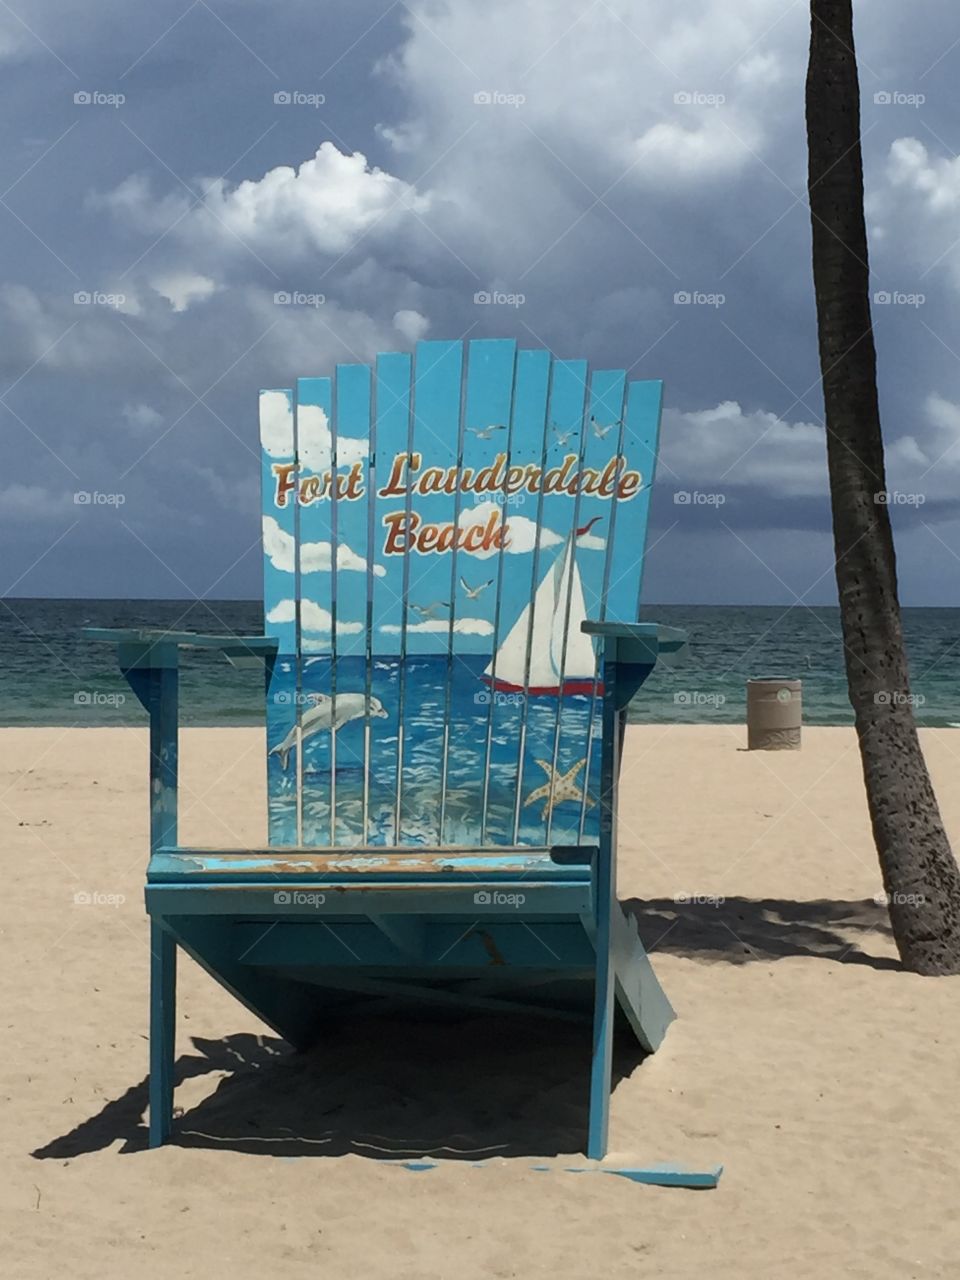 Fort Lauderdale beach chair